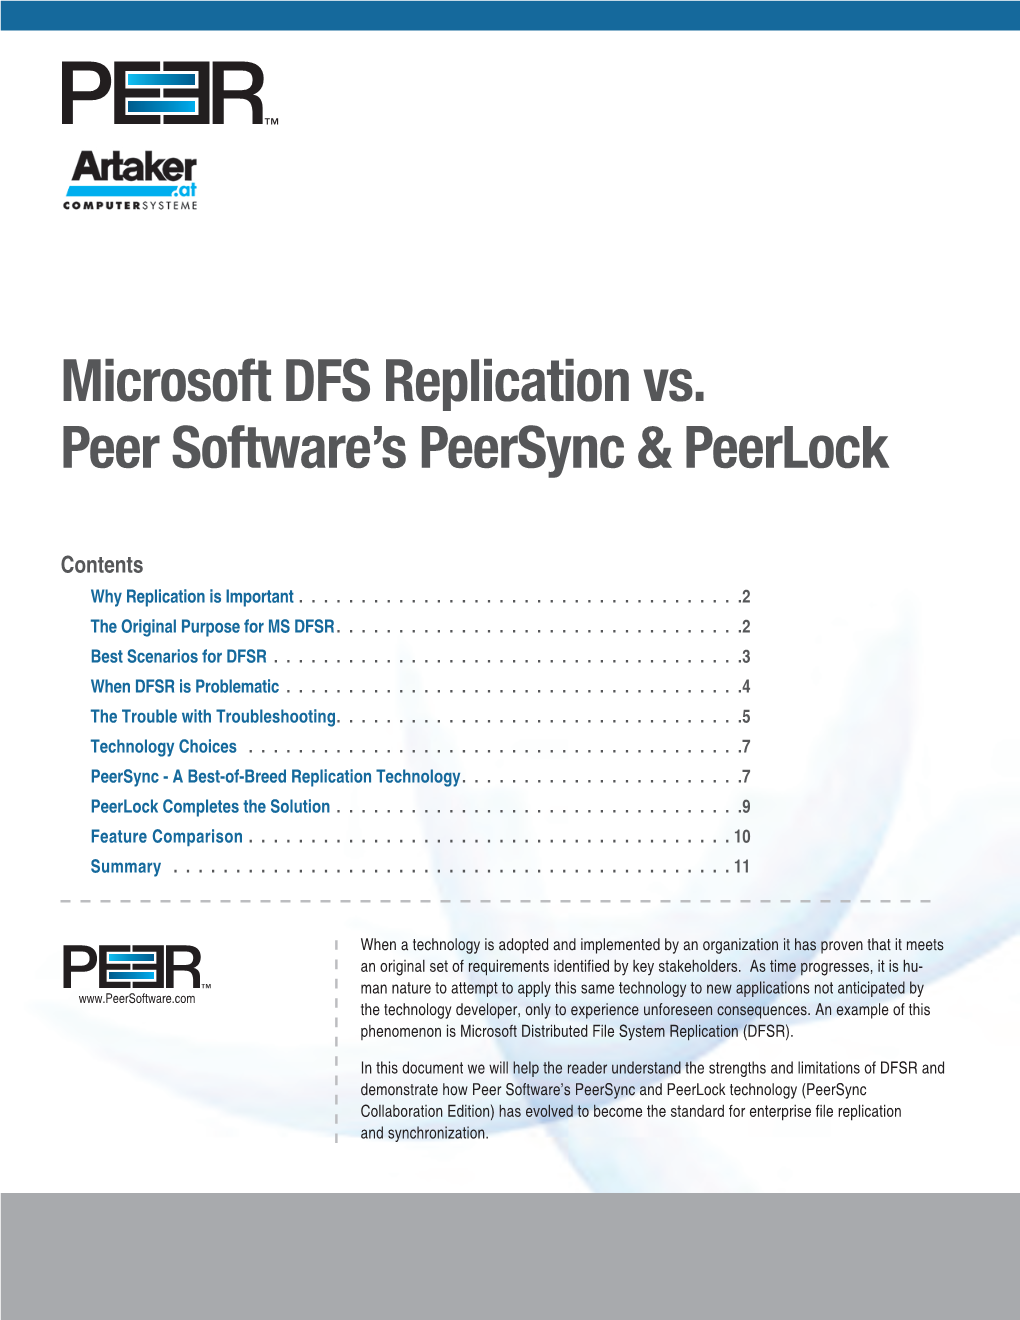 Microsoft DFS Replication Vs. Peer Software's Peersync & Peerlock